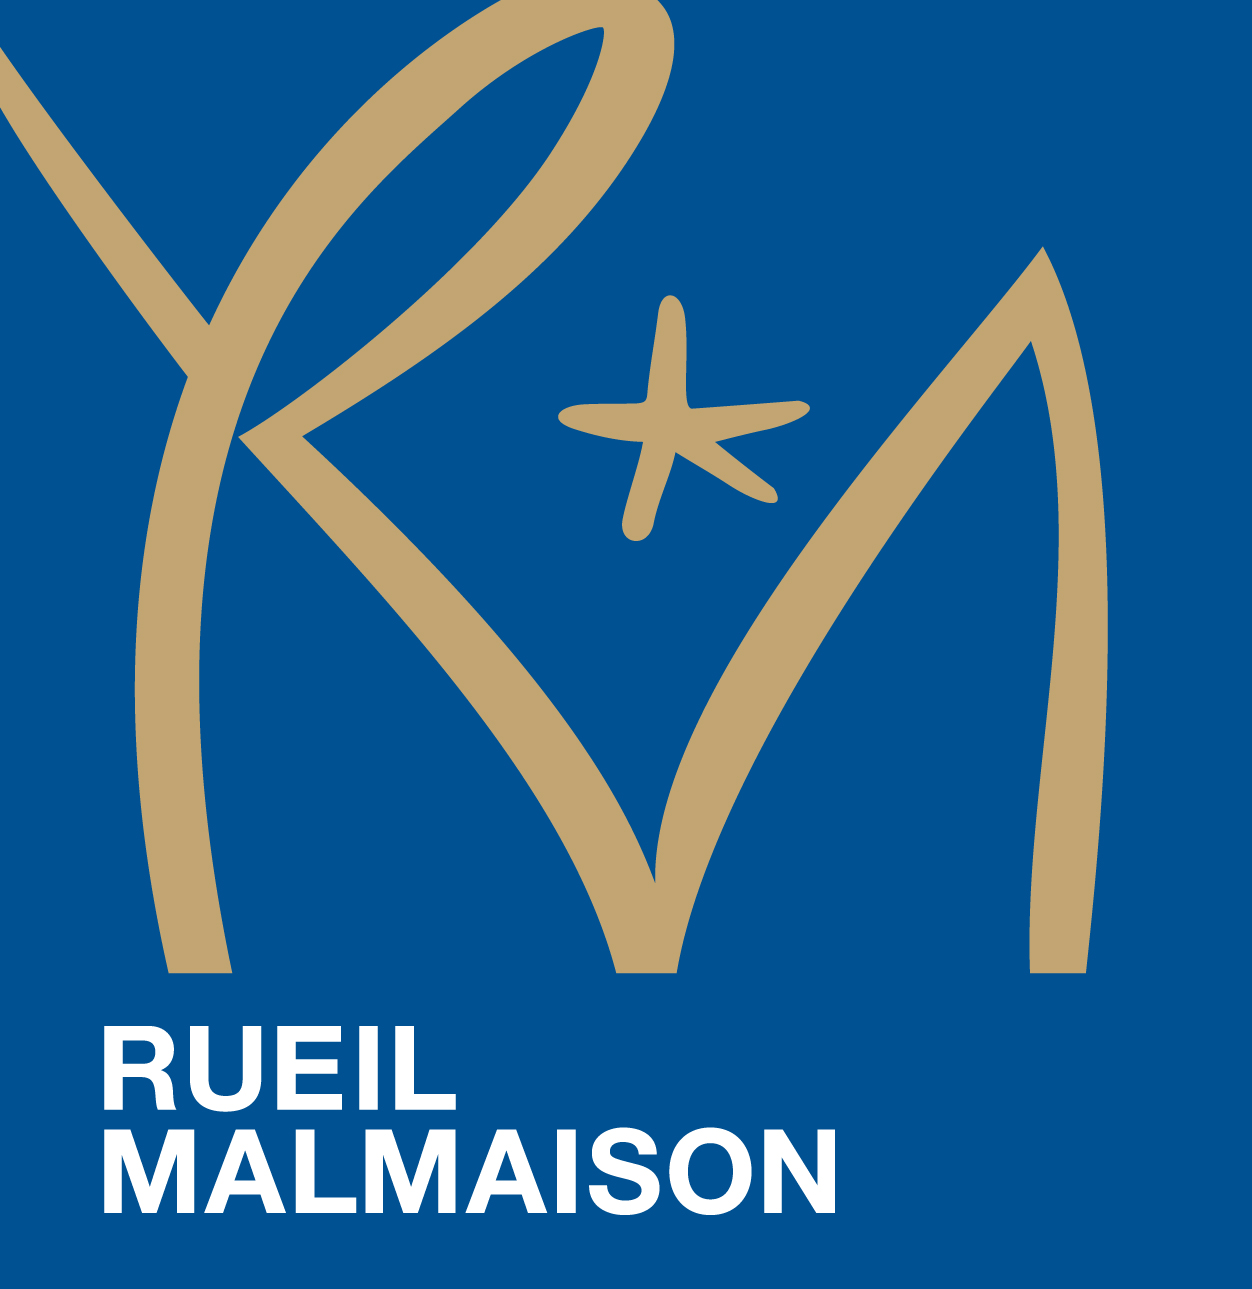 RUEIL-MALMAISON